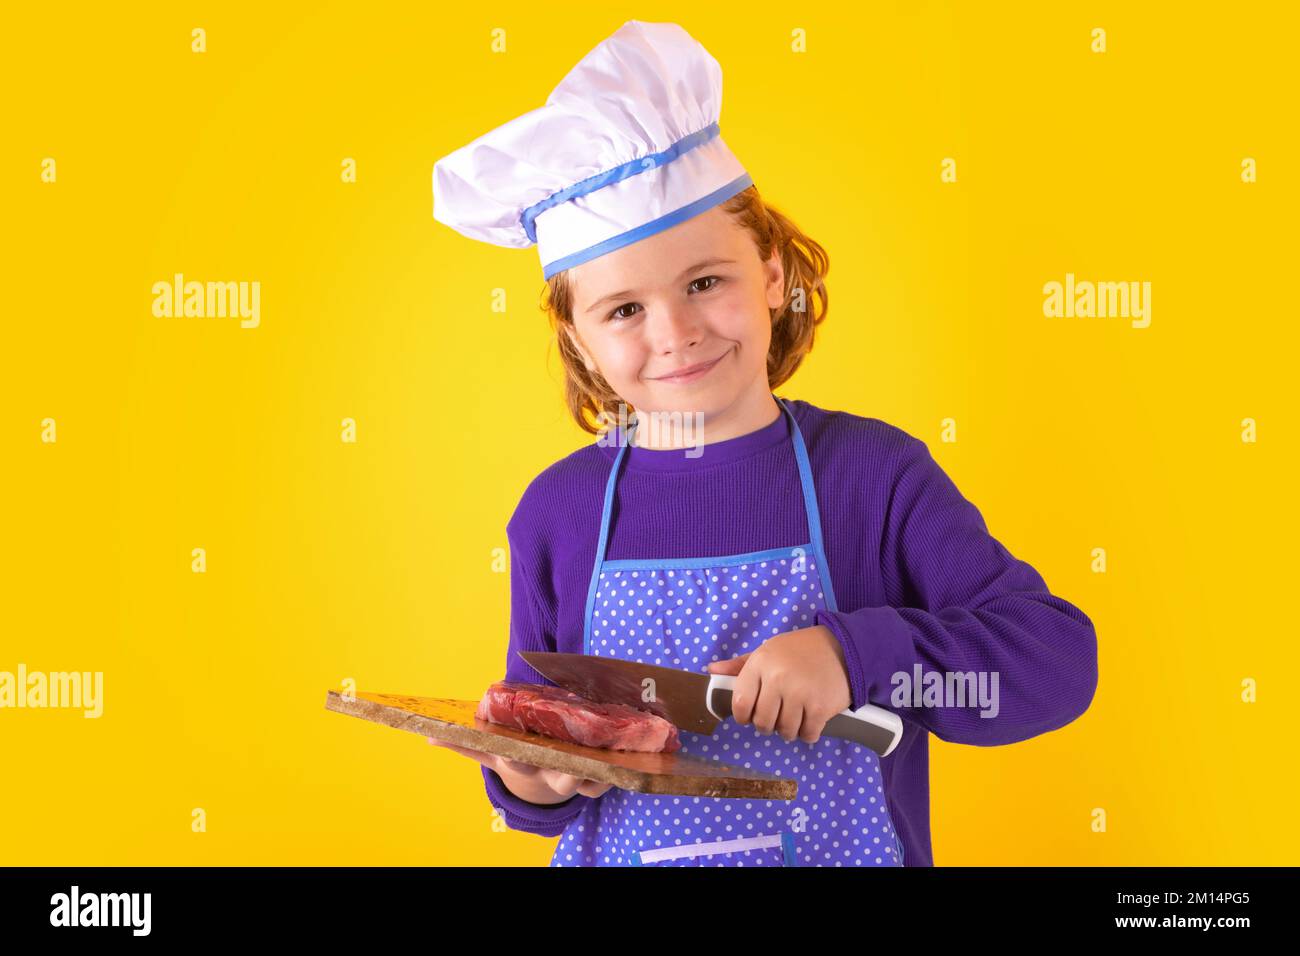 Der Kinderkoch hält das Schneidebrett mit Fleischsteak und Messer. Kinderkoch. Kindergarderobe und Kochmütze für die Zubereitung von Speisen, Studioporträt Stockfoto